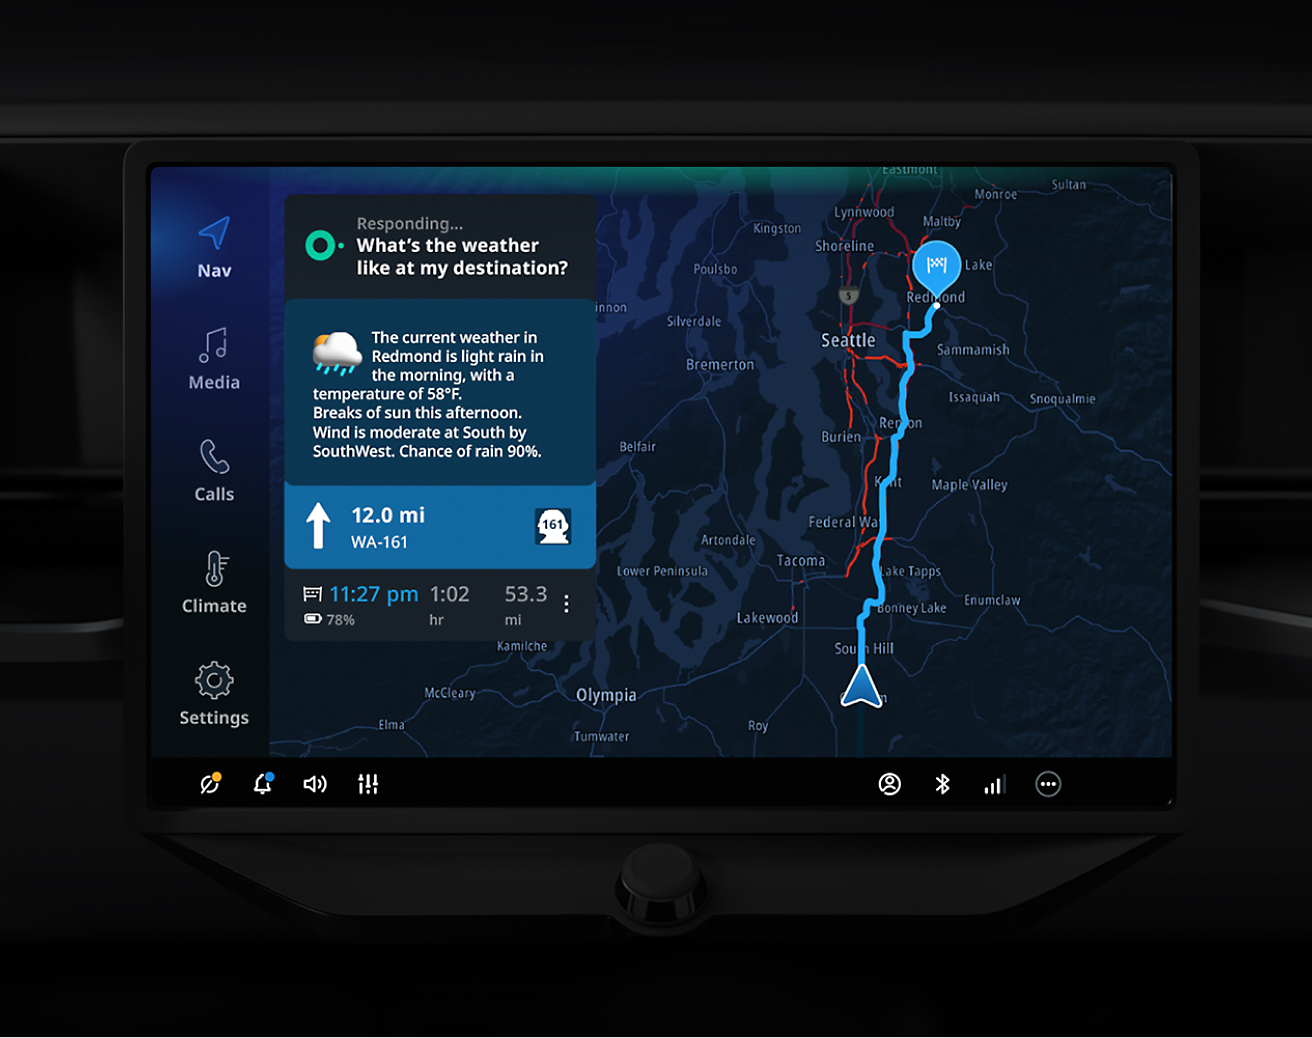 Ekran dotykowy samochodu przedstawiający mapę nawigacji z prognozą pogody dla obszaru Seattle i różnymi ustawieniami sterowania.